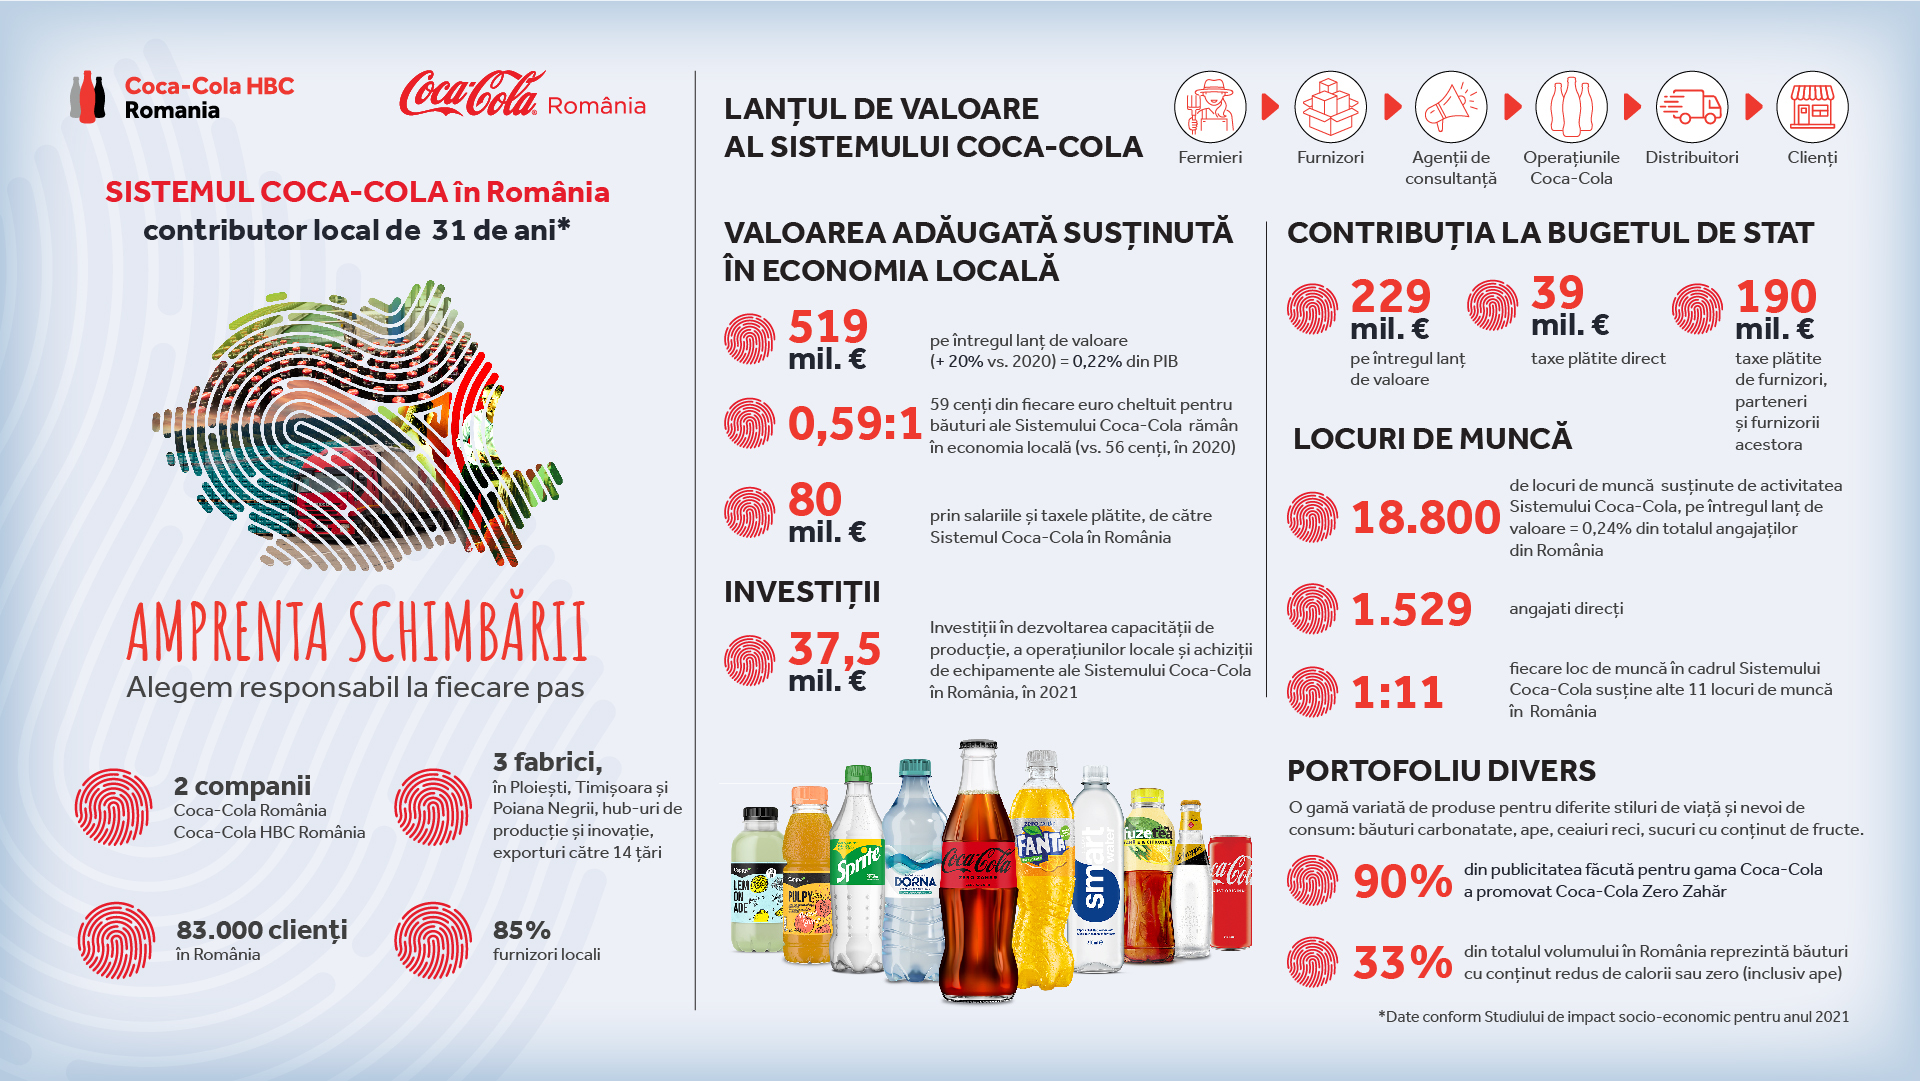 (P) Sistemul Coca-Cola în România: indiferent de provocări, am rămas un contributor constant şi de încredere în economia locală, de 31 de ani